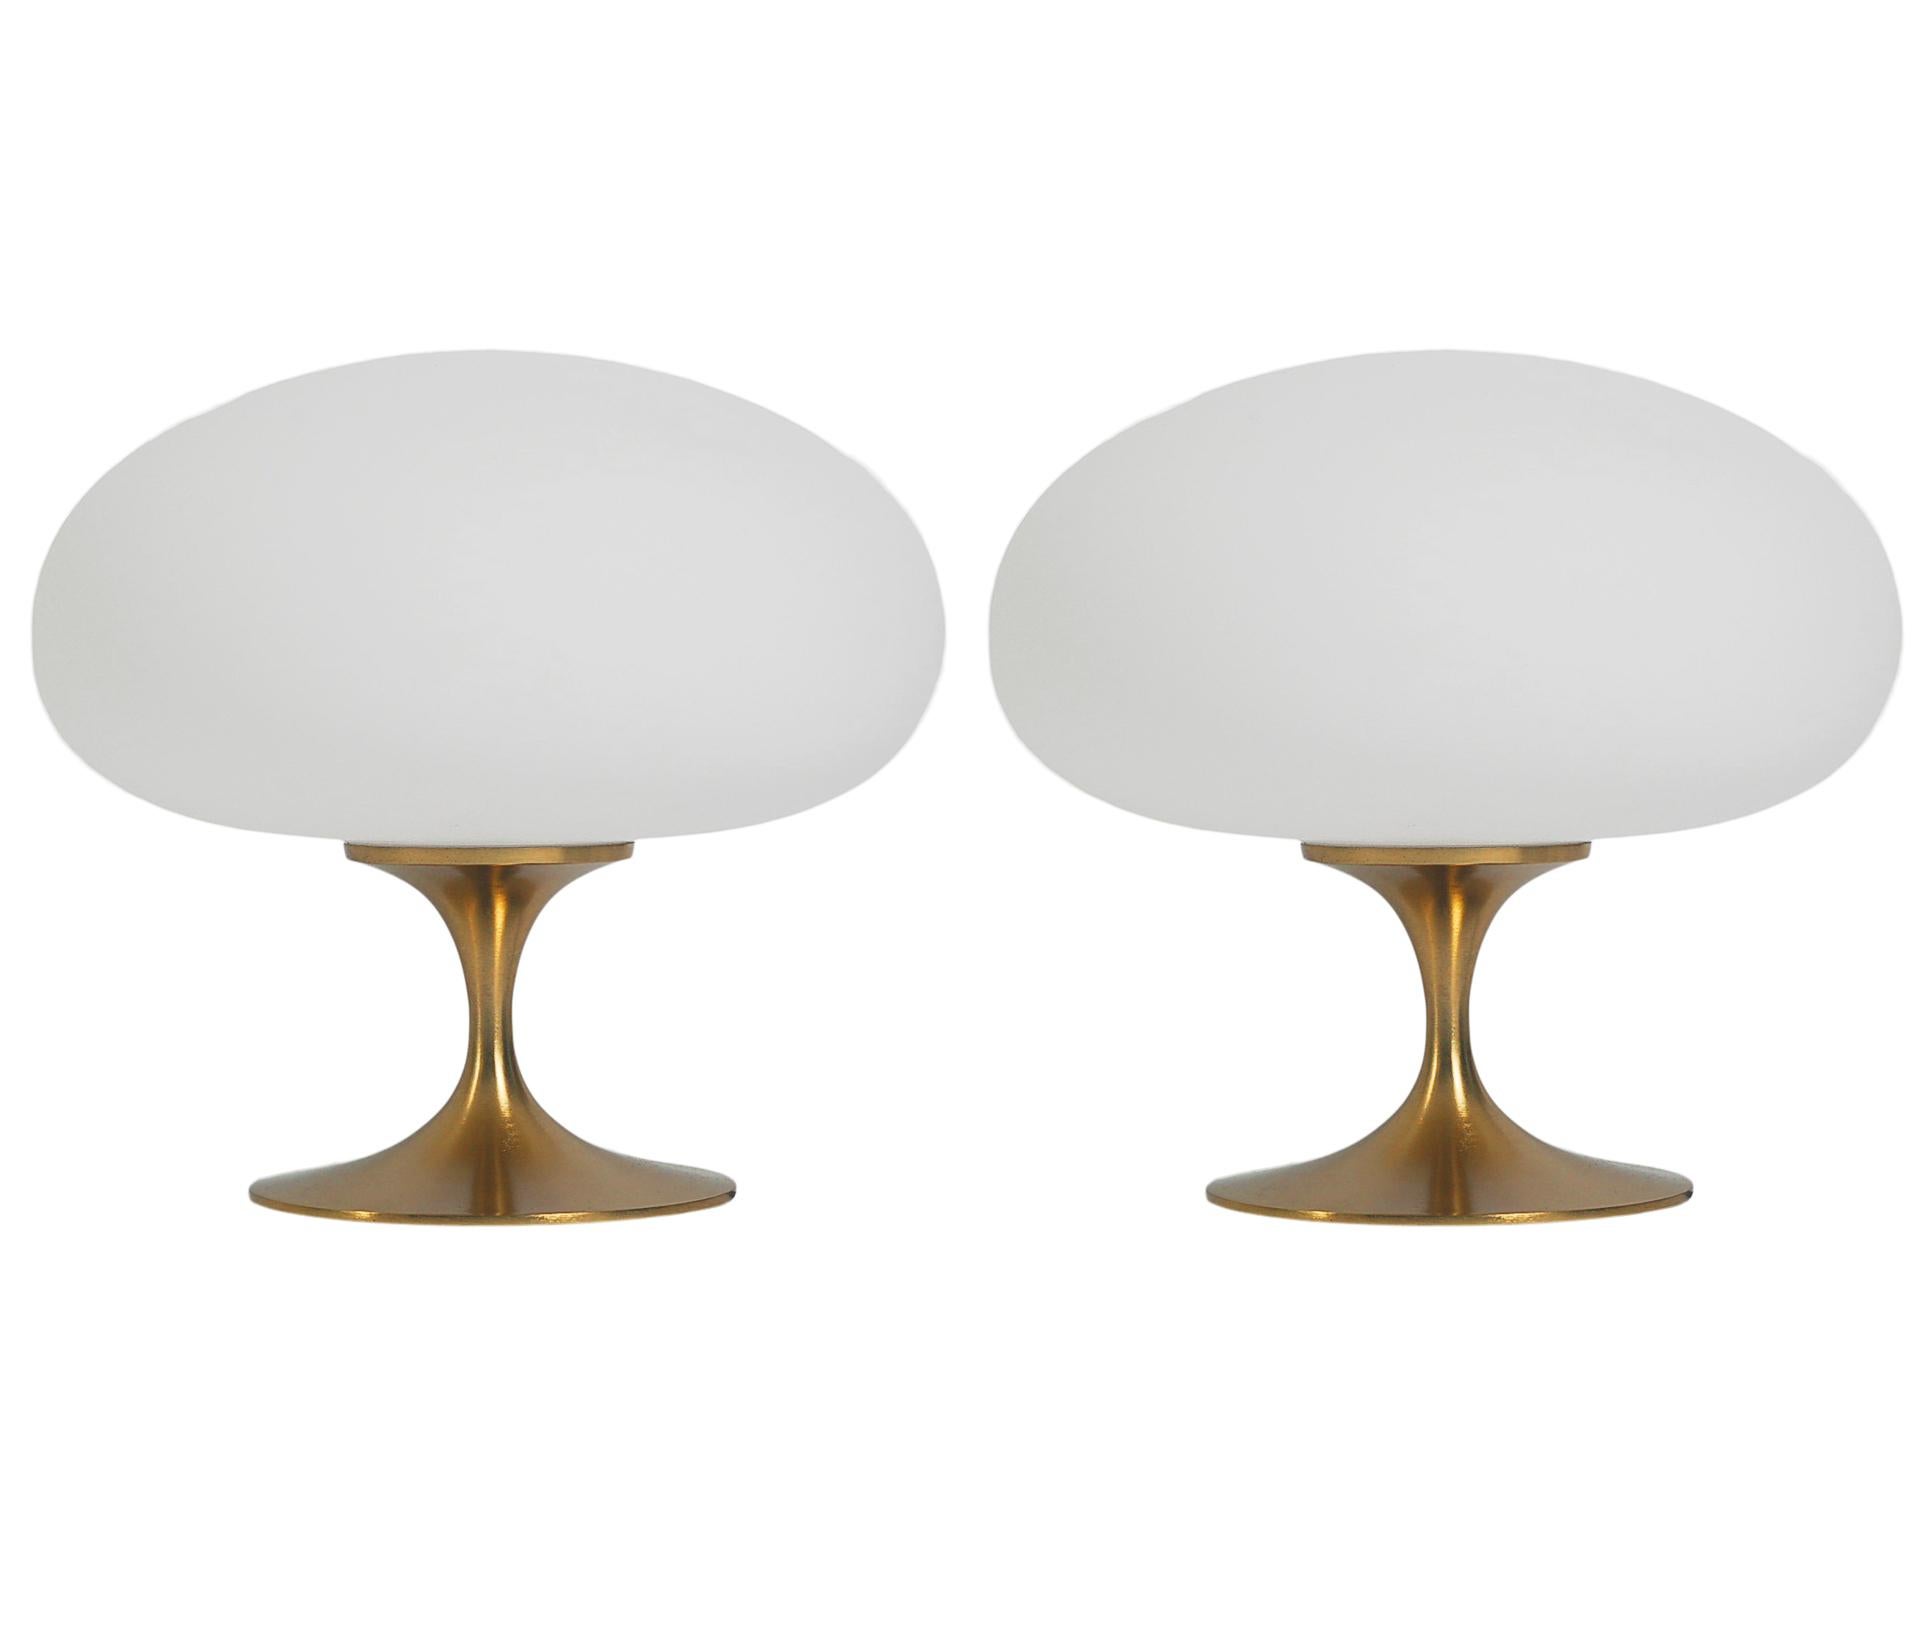 Ein wunderschönes Paar Stemlite Tischlampen in Tulpenform. Sie verfügen über vermessingte Aluminiumguss-Sockel mit mundgeblasenen, mattierten weißen Glasschirmen. Der Preis beinhaltet das Paar wie abgebildet.